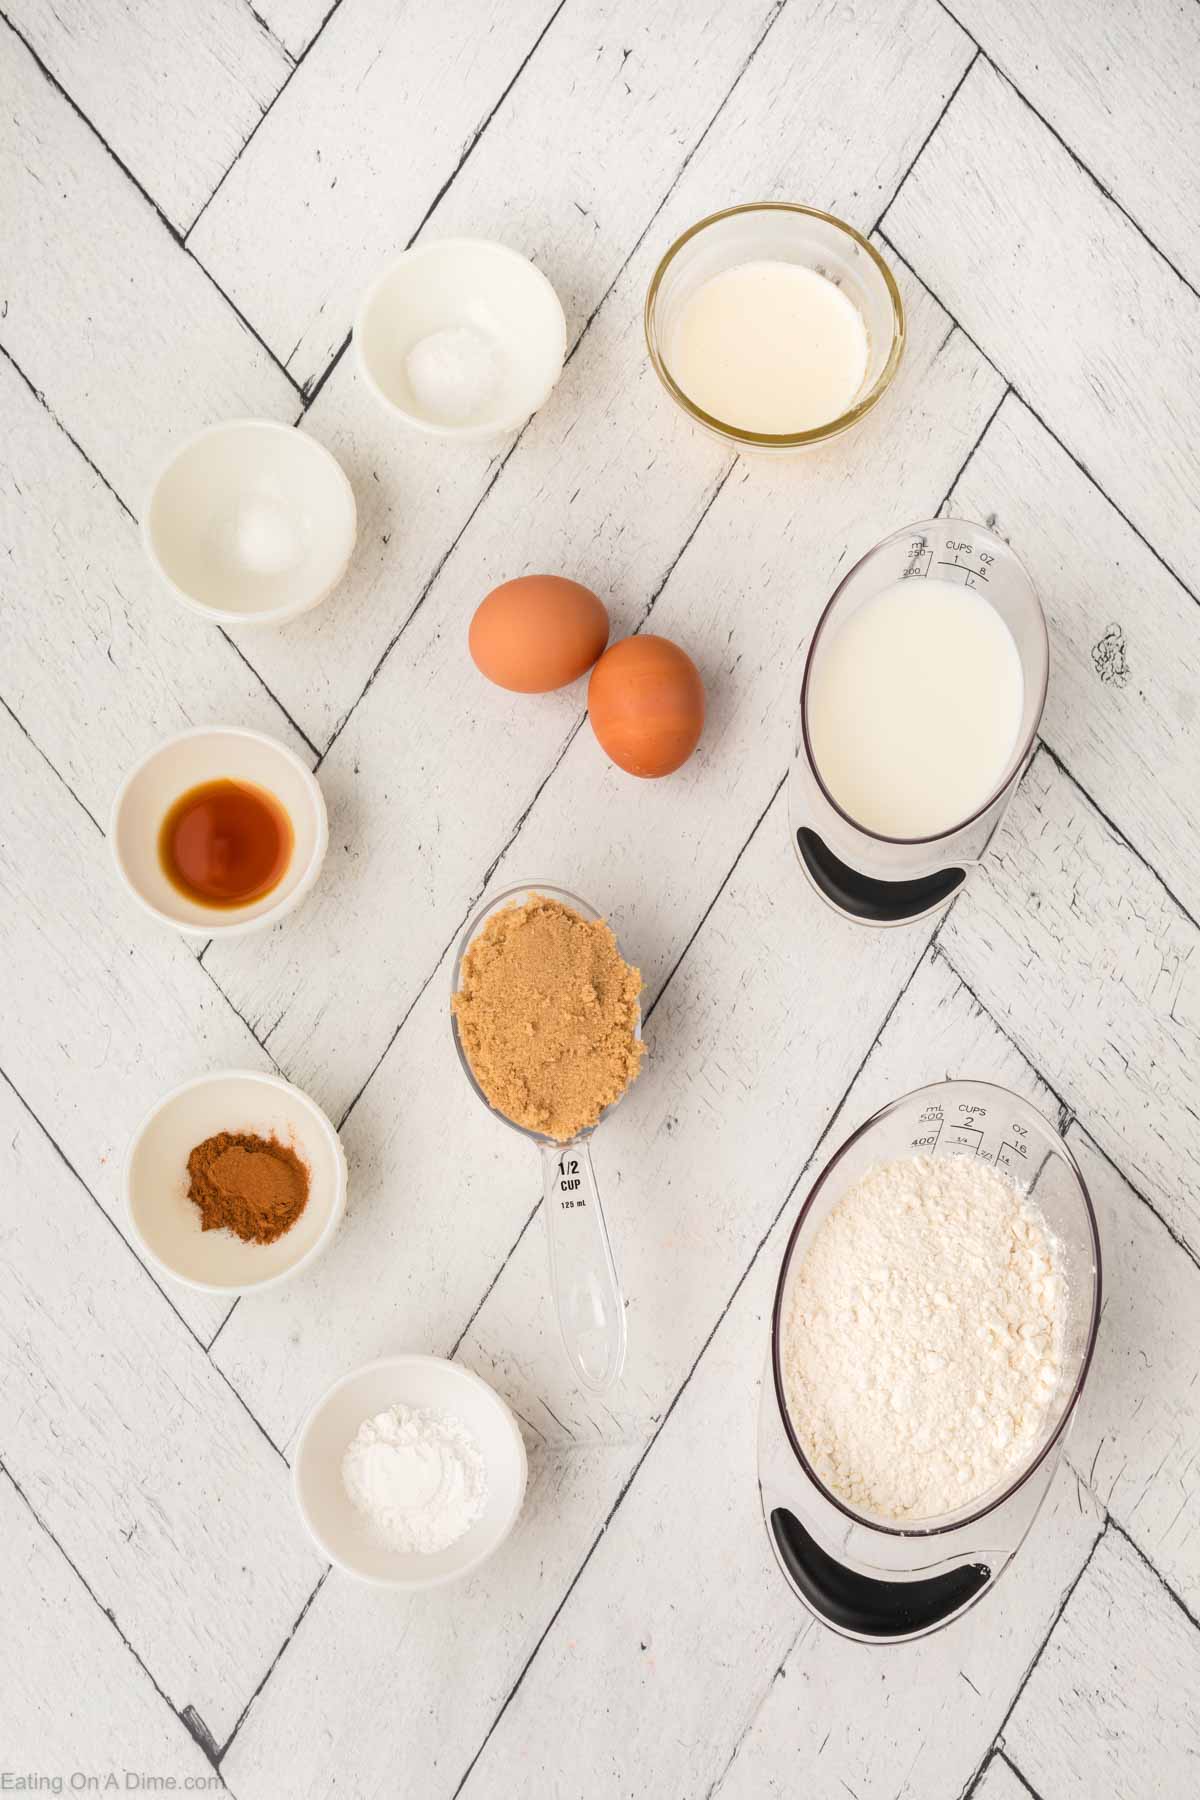 Coffee Cake Muffins Ingredients - Flour, brown sugar, baking powder, baking soda, salt, cinnamon, milk, butter, eggs, vanilla extract, powdered sugar